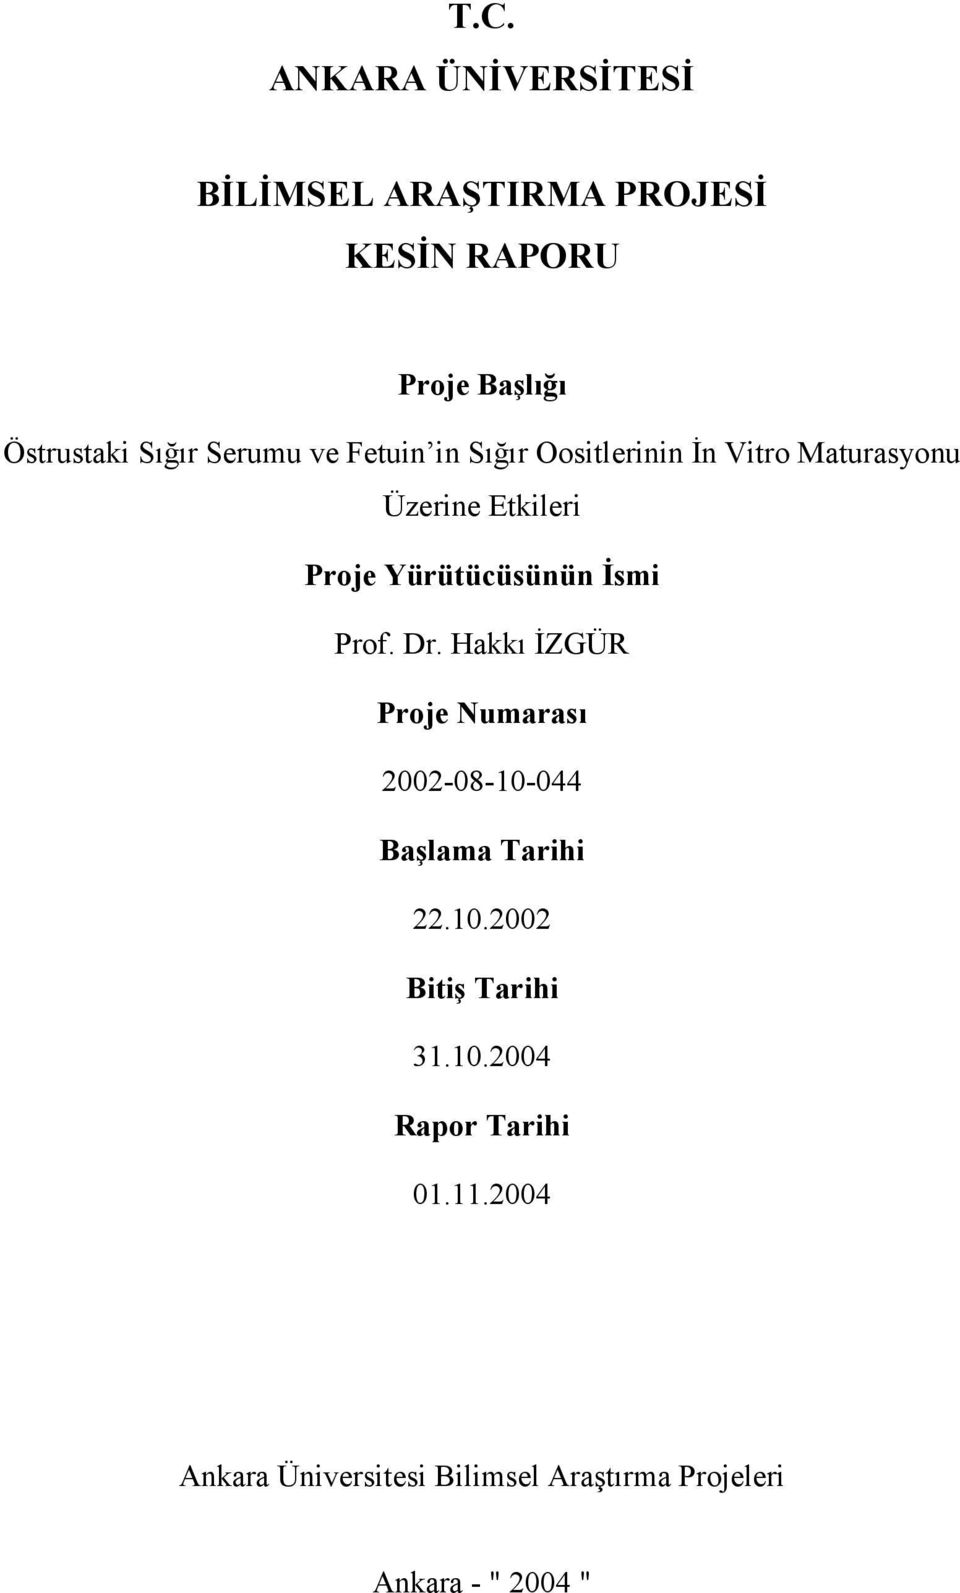 İsmi Prof. Dr. Hakkı İZGÜR Proje Numarası 2002-08-10-044 Başlama Tarihi 22.10.2002 Bitiş Tarihi 31.